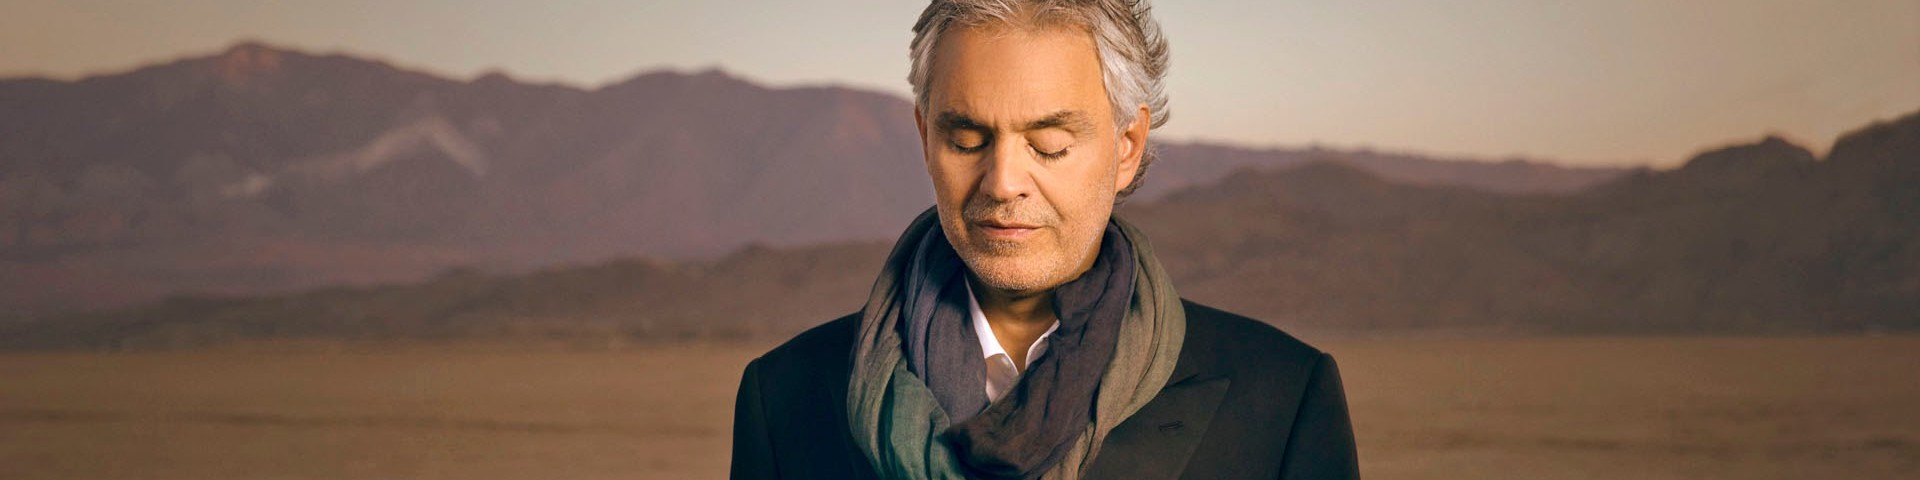 Ali di libertà con Andrea Bocelli: scaletta, ospiti, streaming